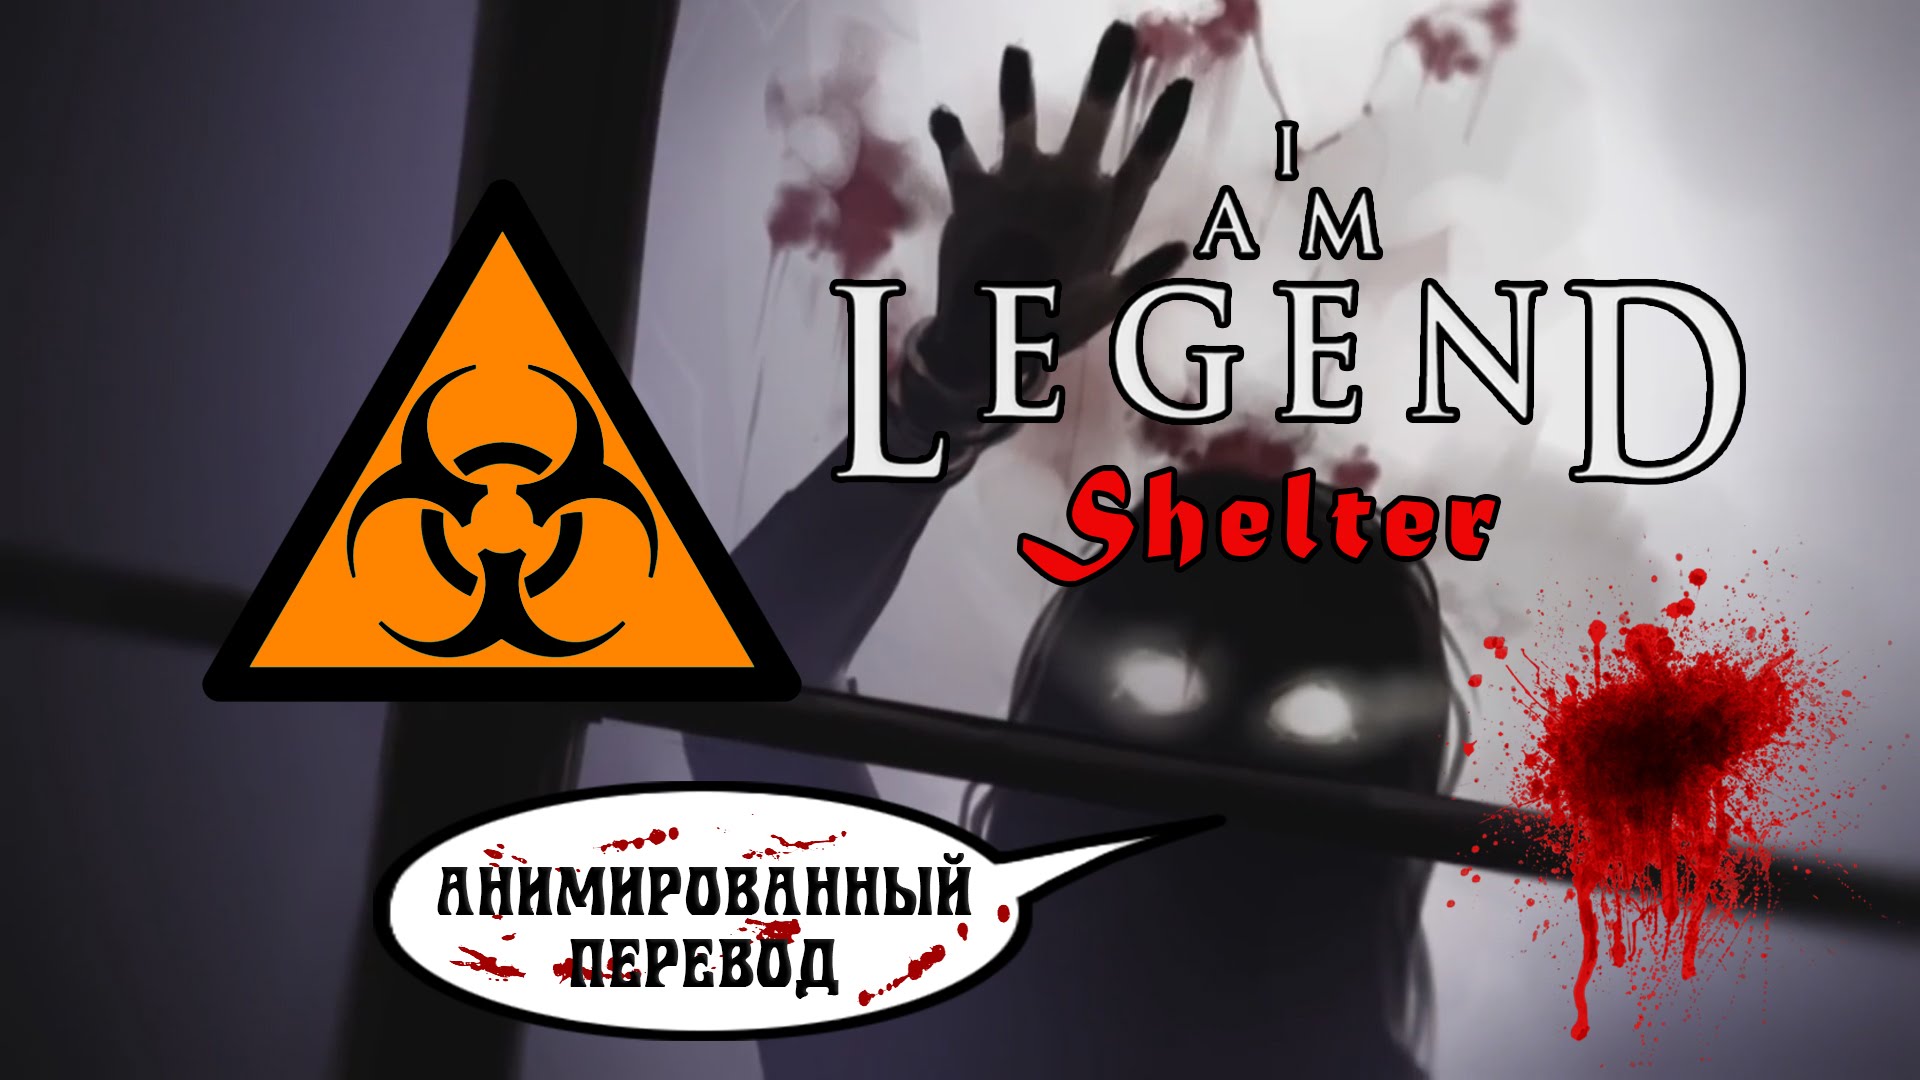 HQ I Am Legend - Shelter Wallpapers | File 205.88Kb